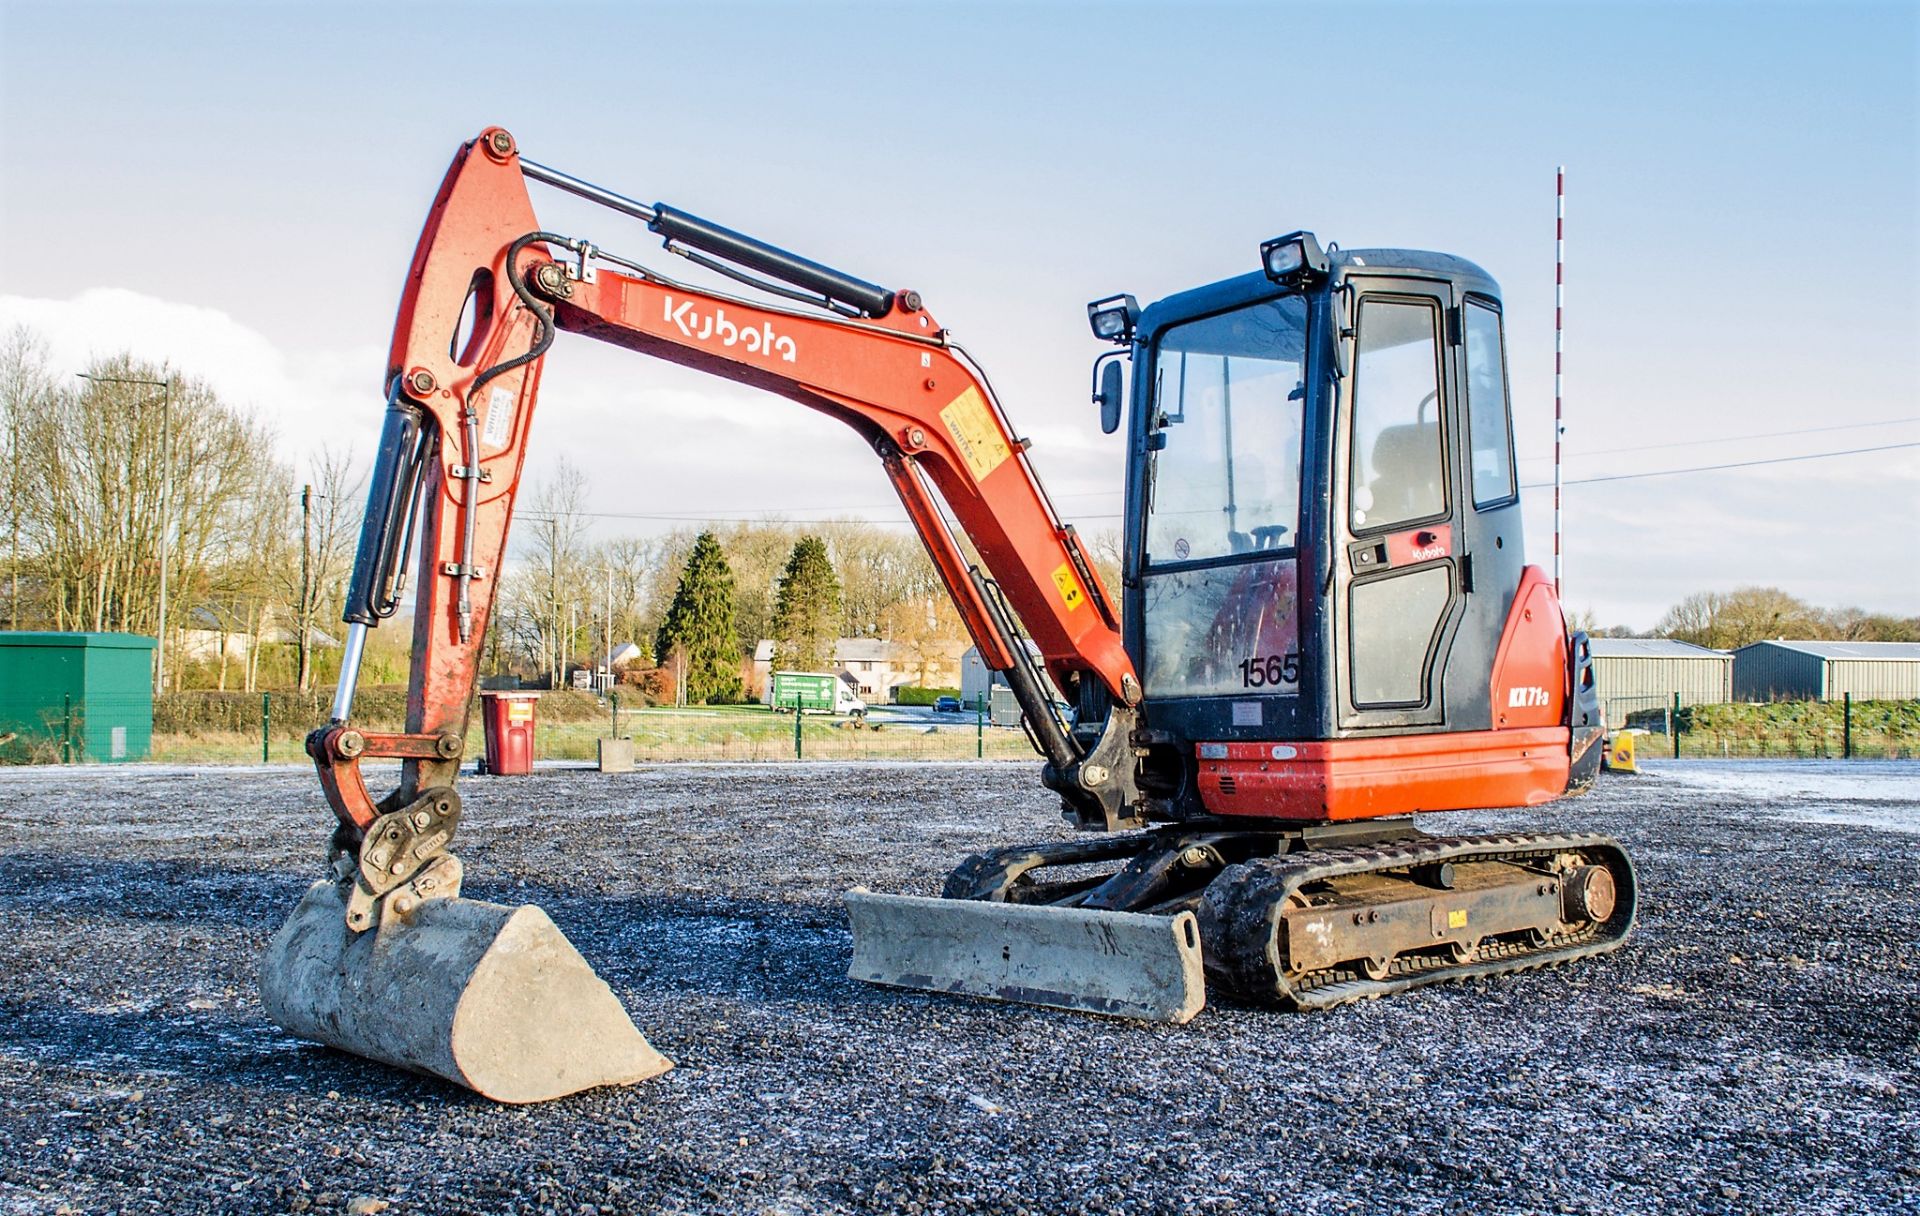 Kubota KX71-3 2.6 tonne rubber tracked excavator